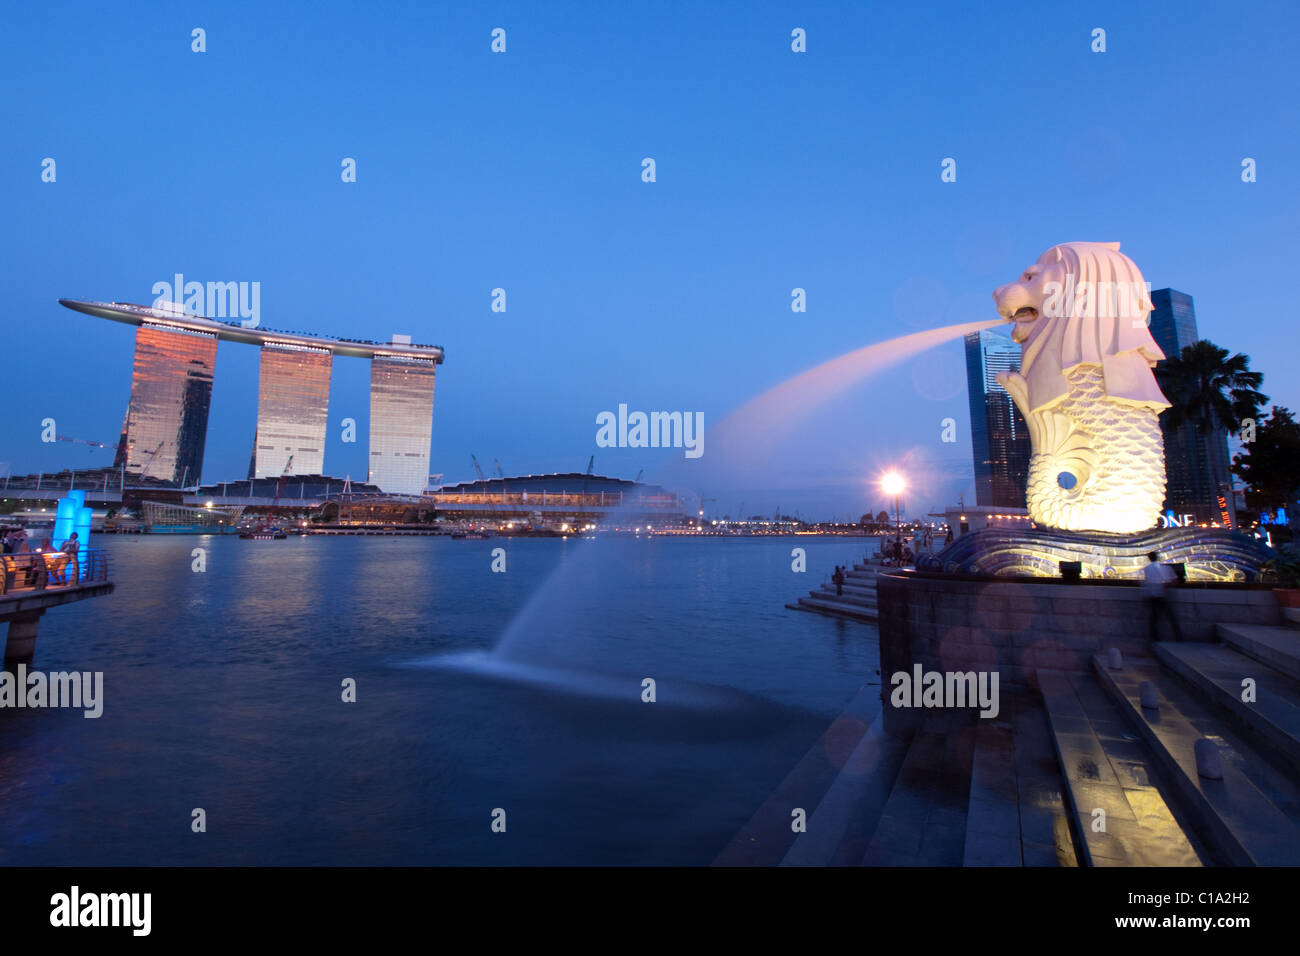 Nouveaux et anciens de Singapour : le Marina Bay Sands et le fameux merlion Singapour. Banque D'Images